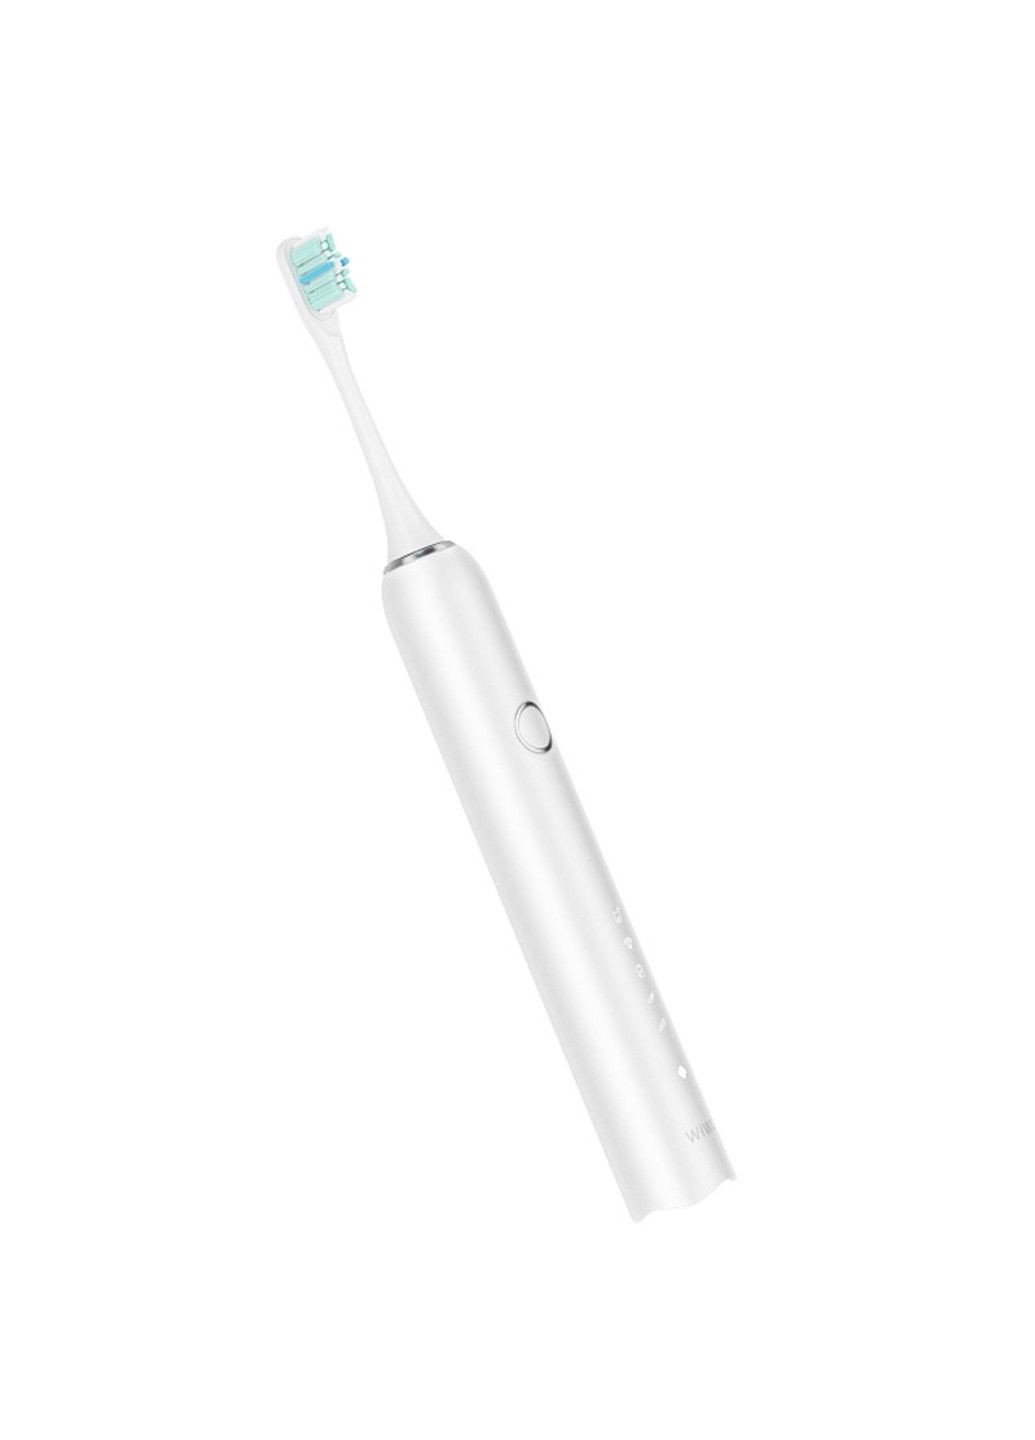 Звукова електрична зубна щітка Wi-TB001 WIWU (291880973)